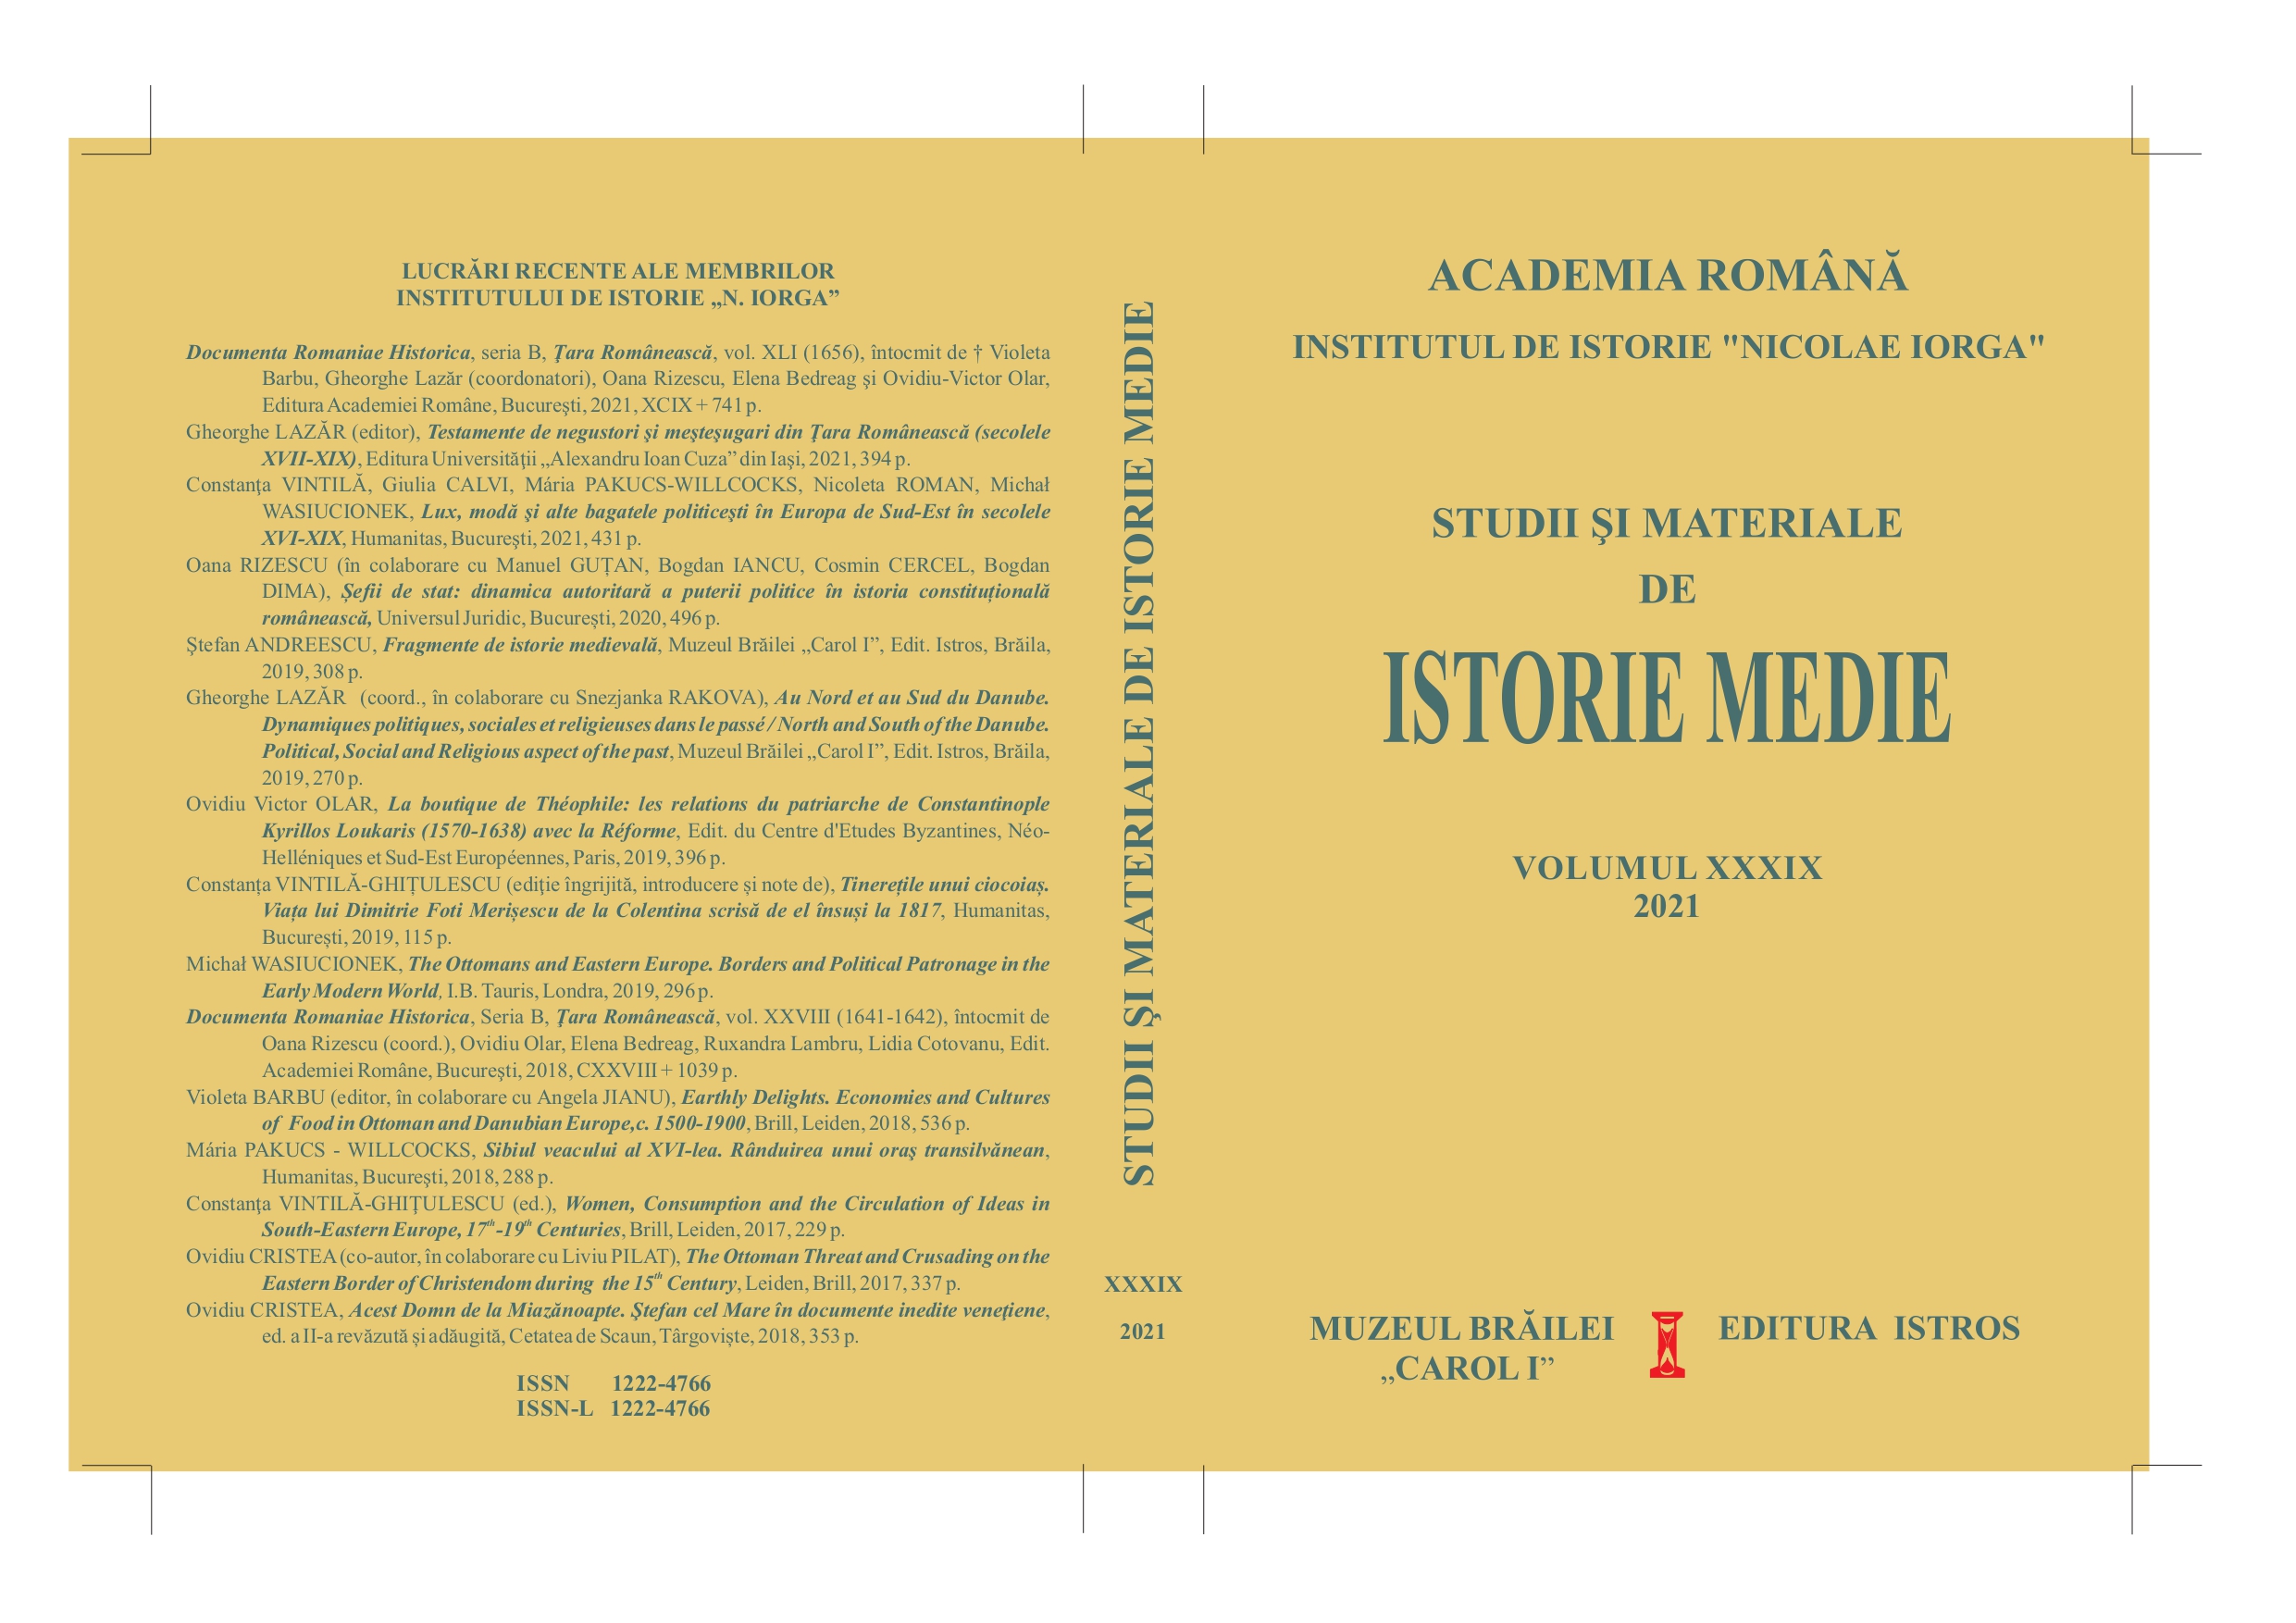 Aurel Răduțiu (21 July 1936 - 8 December 2020) Cover Image